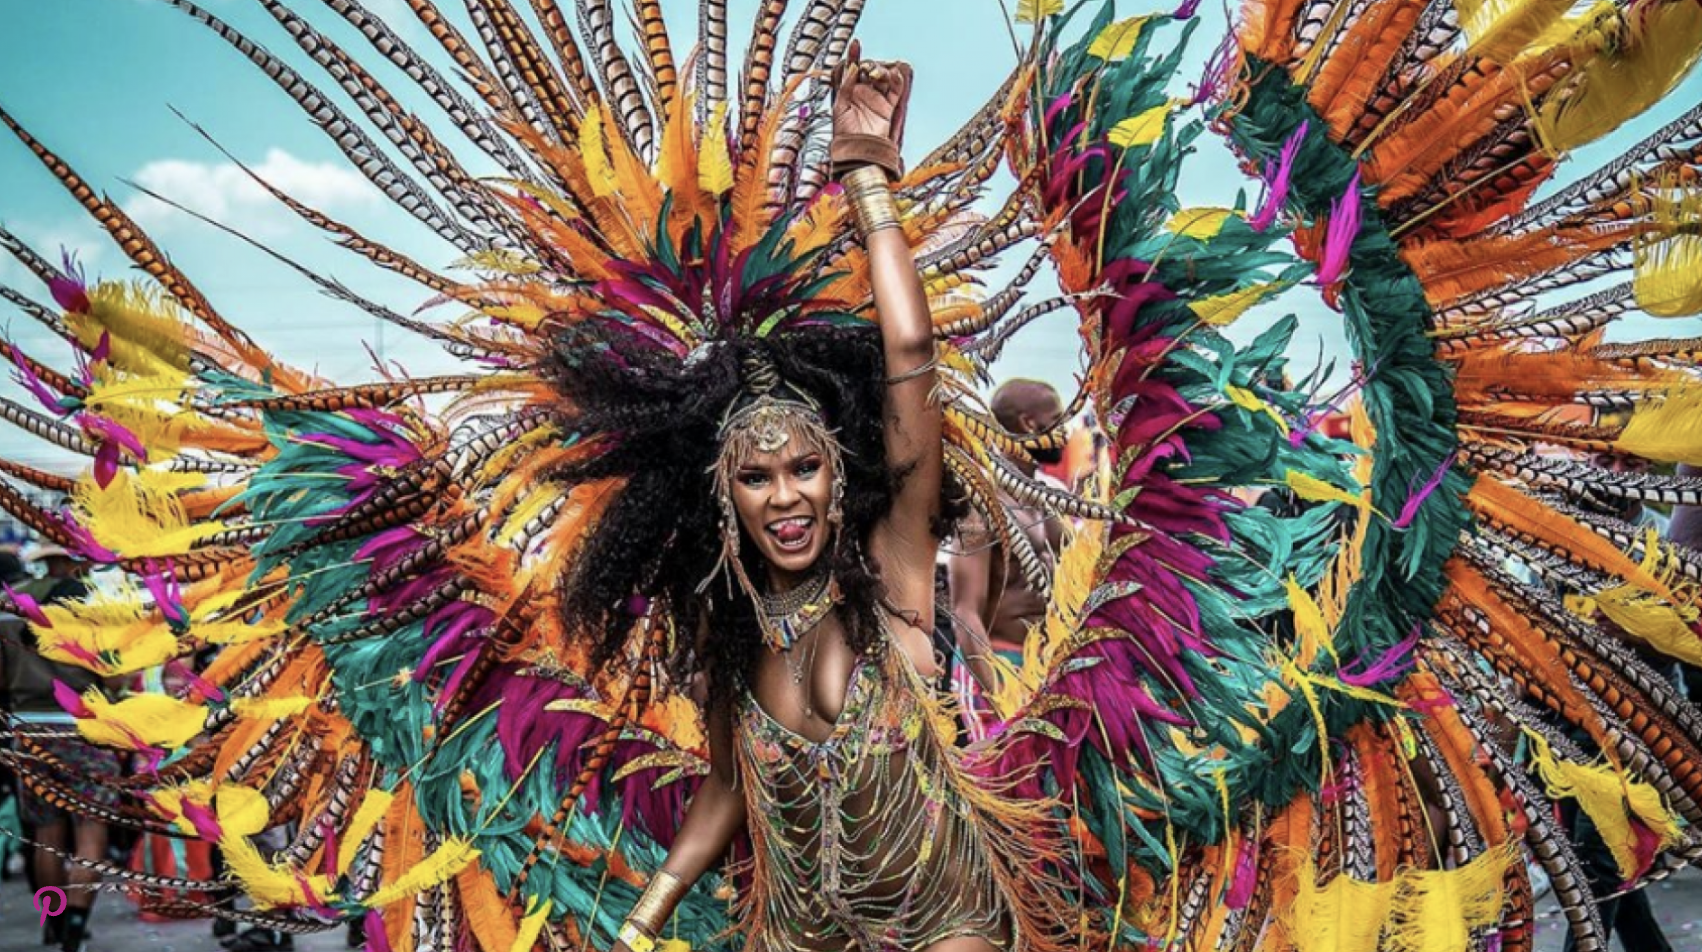 Caribbean Carnival celebration